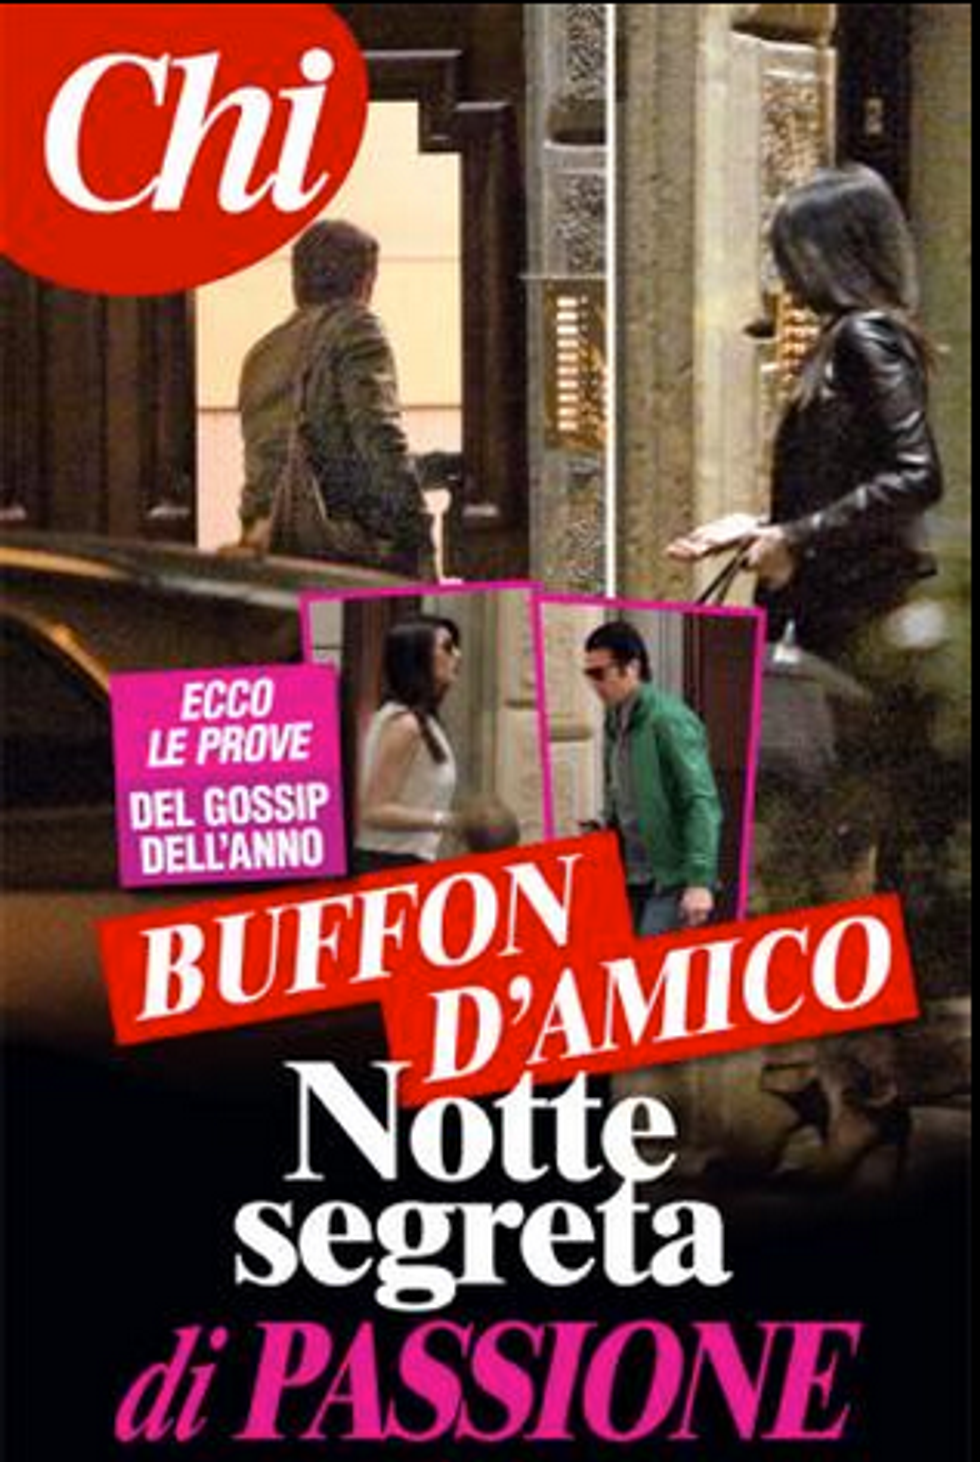 Gigi Buffon e Ilaria D'Amico: notte di passione a Milano